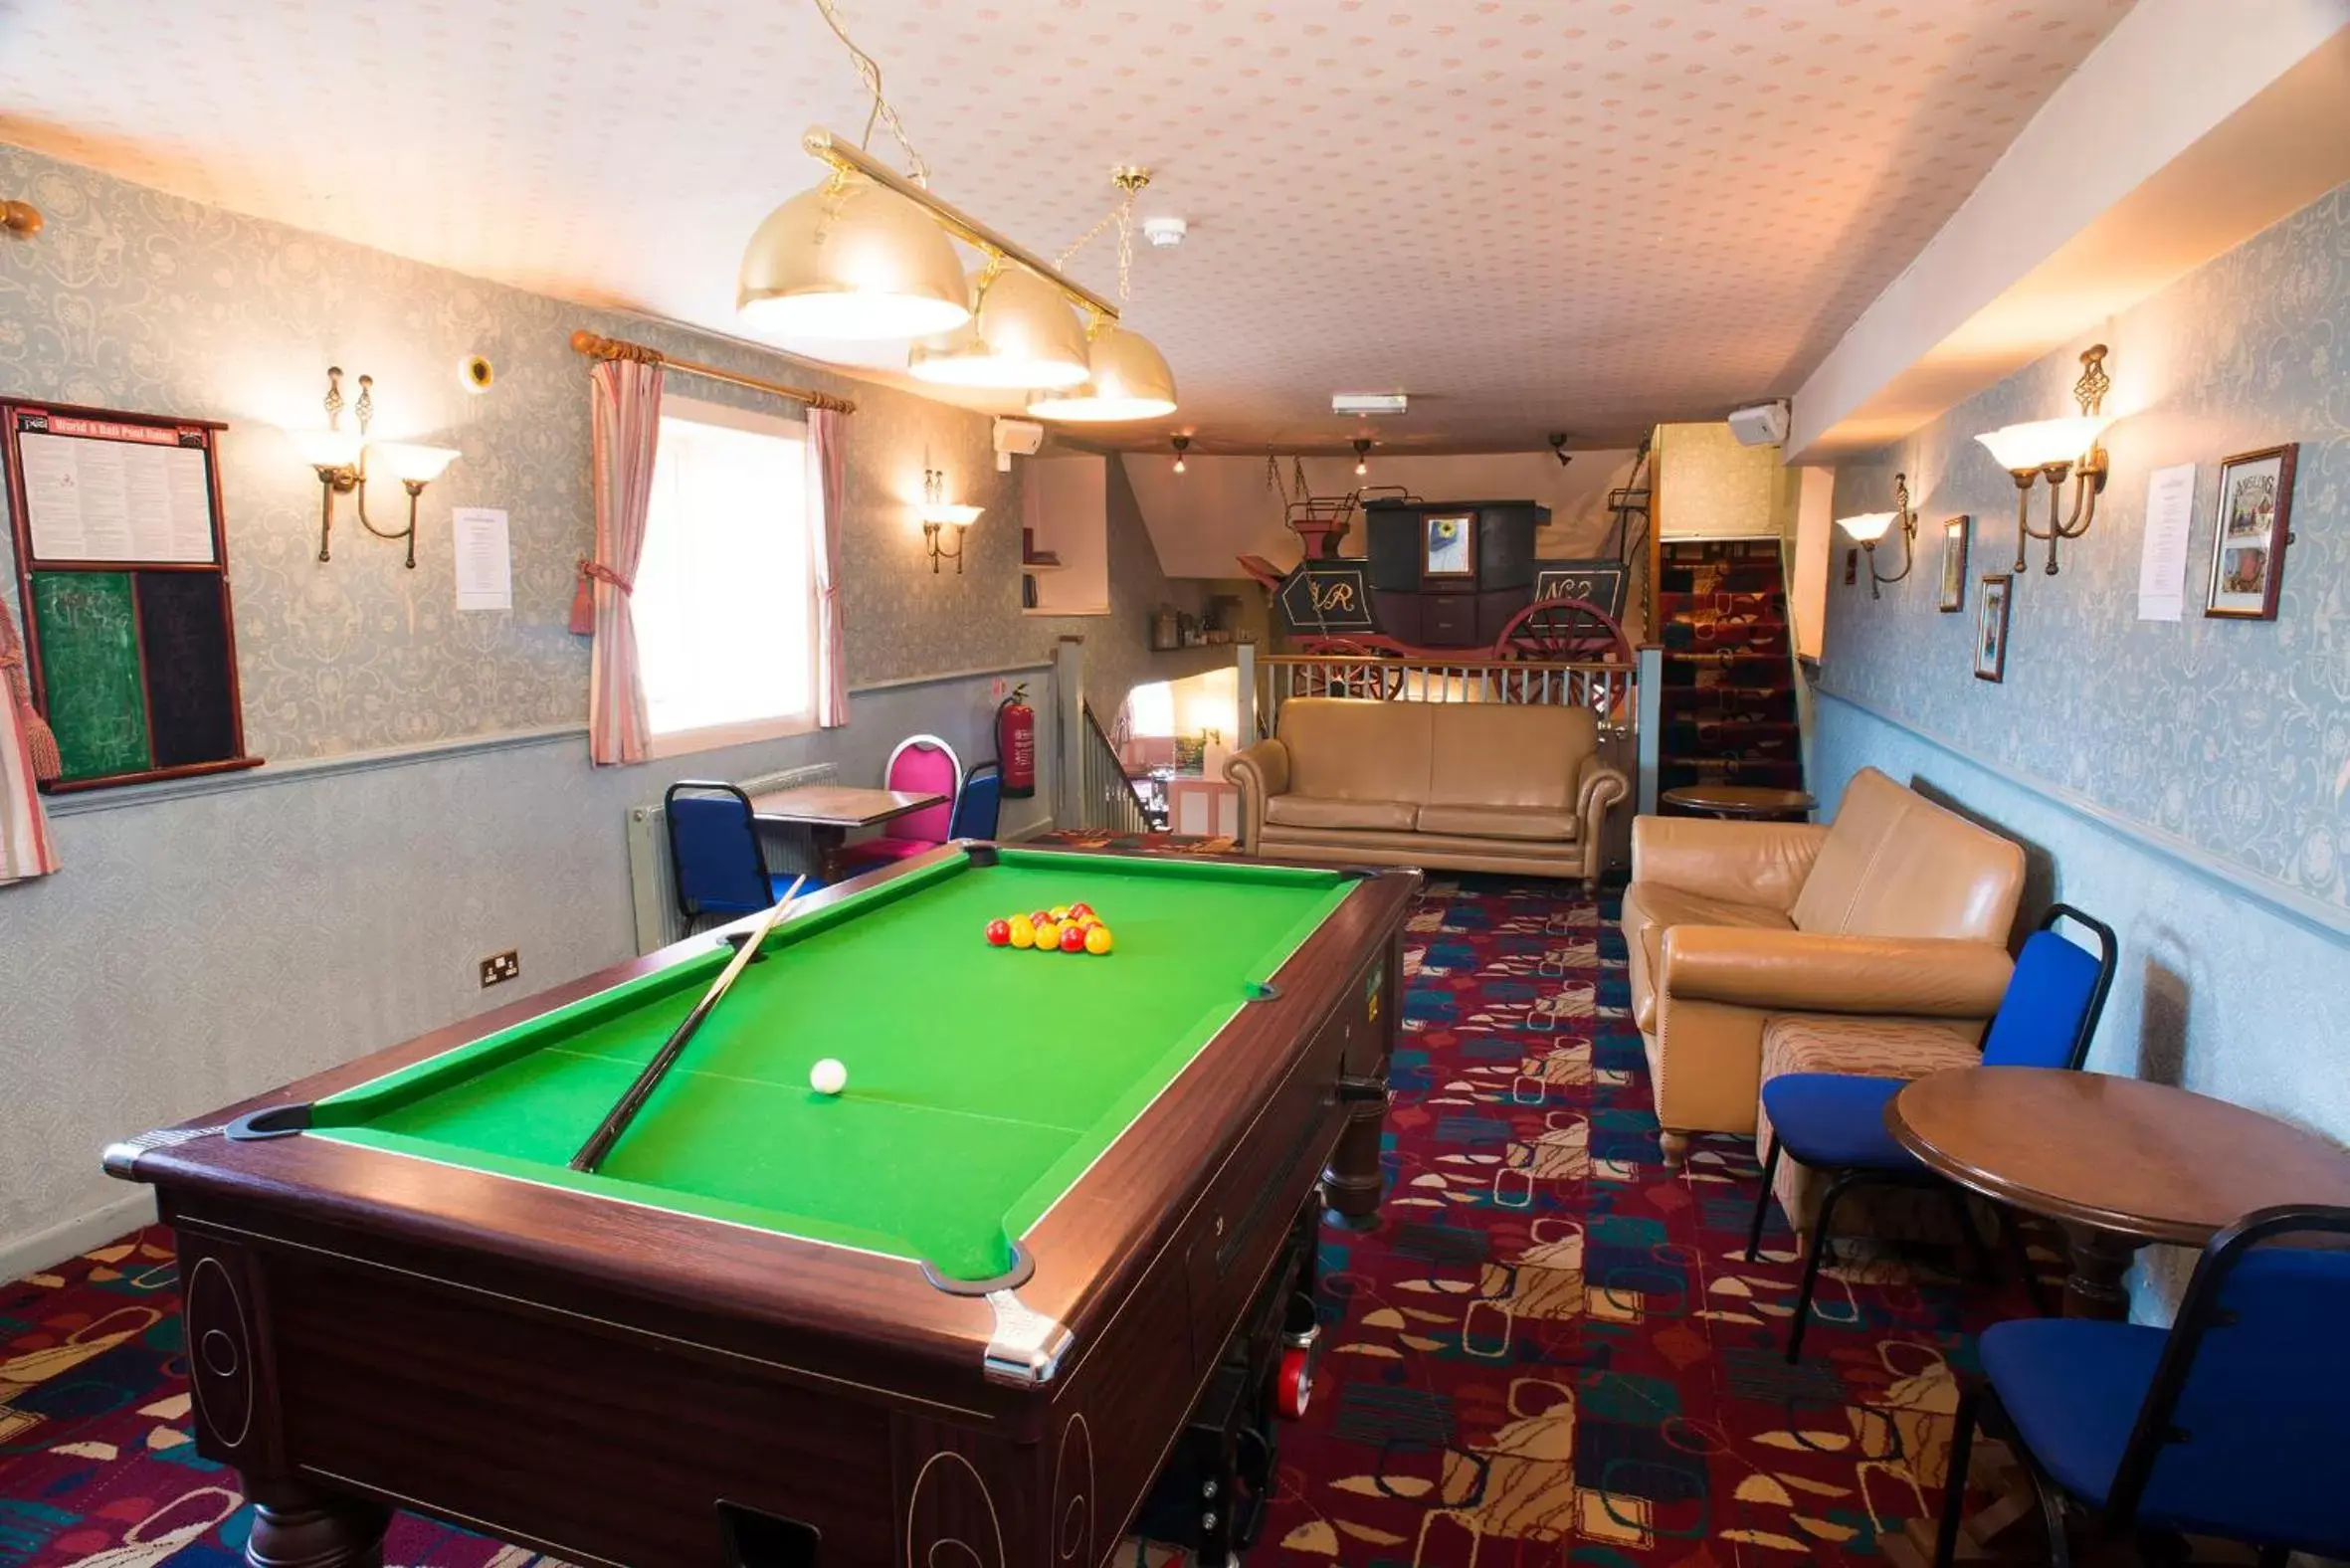 Game Room, Billiards in The Highwayman Inn